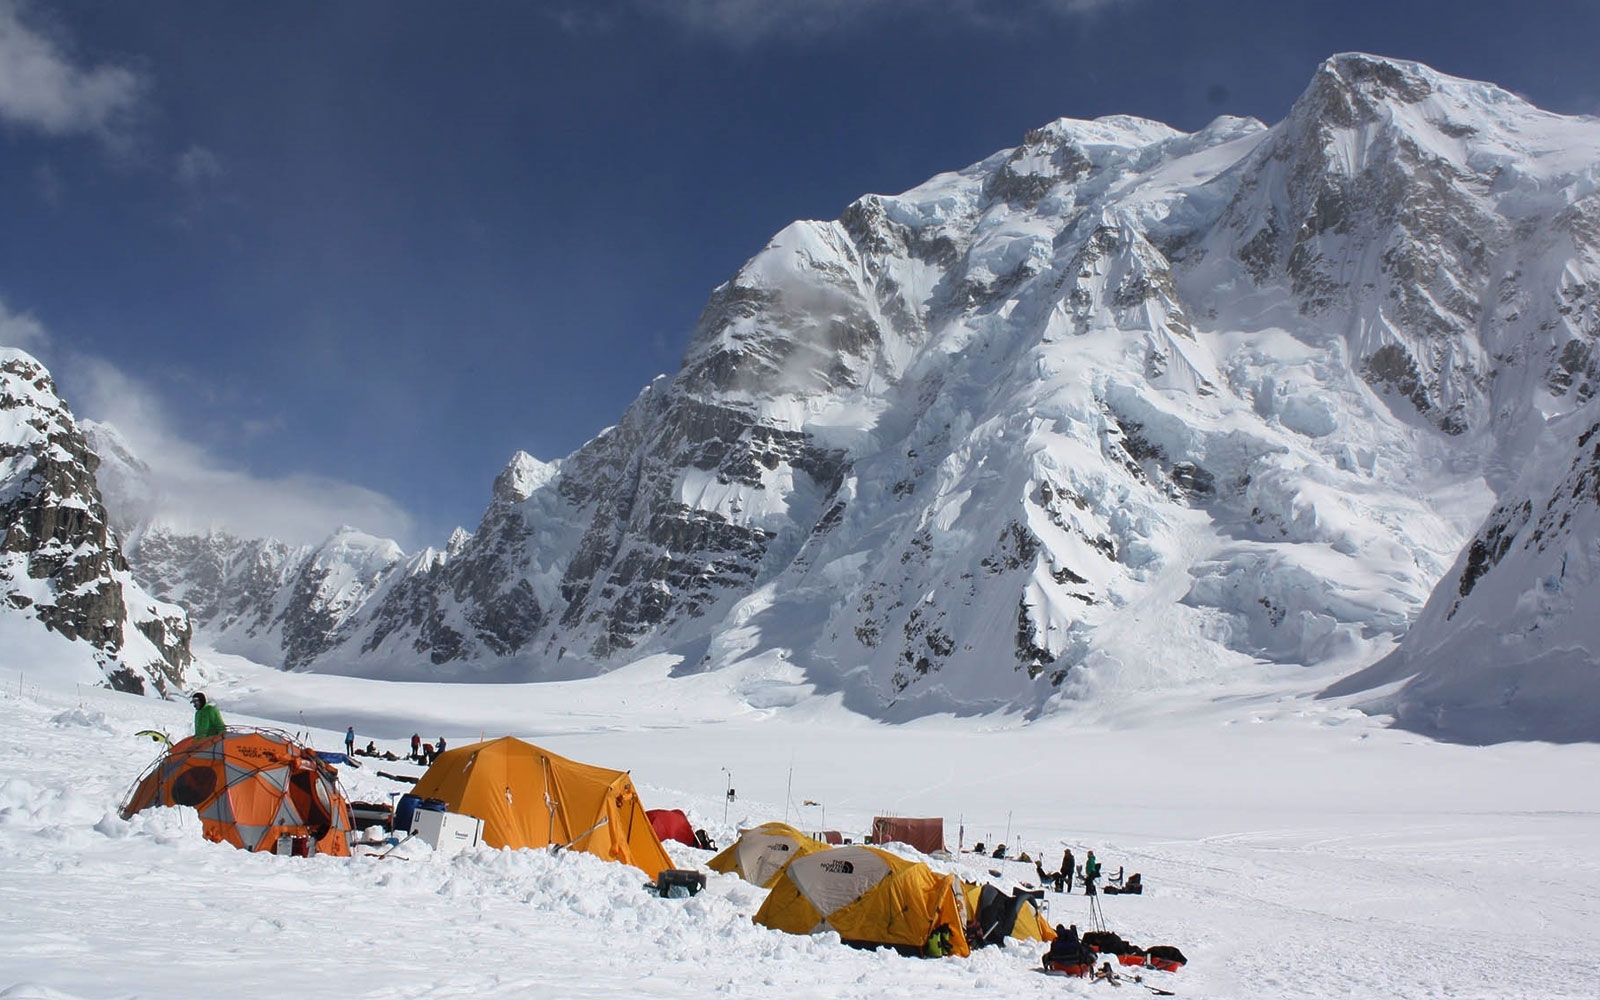 K2 Base Camp Trek